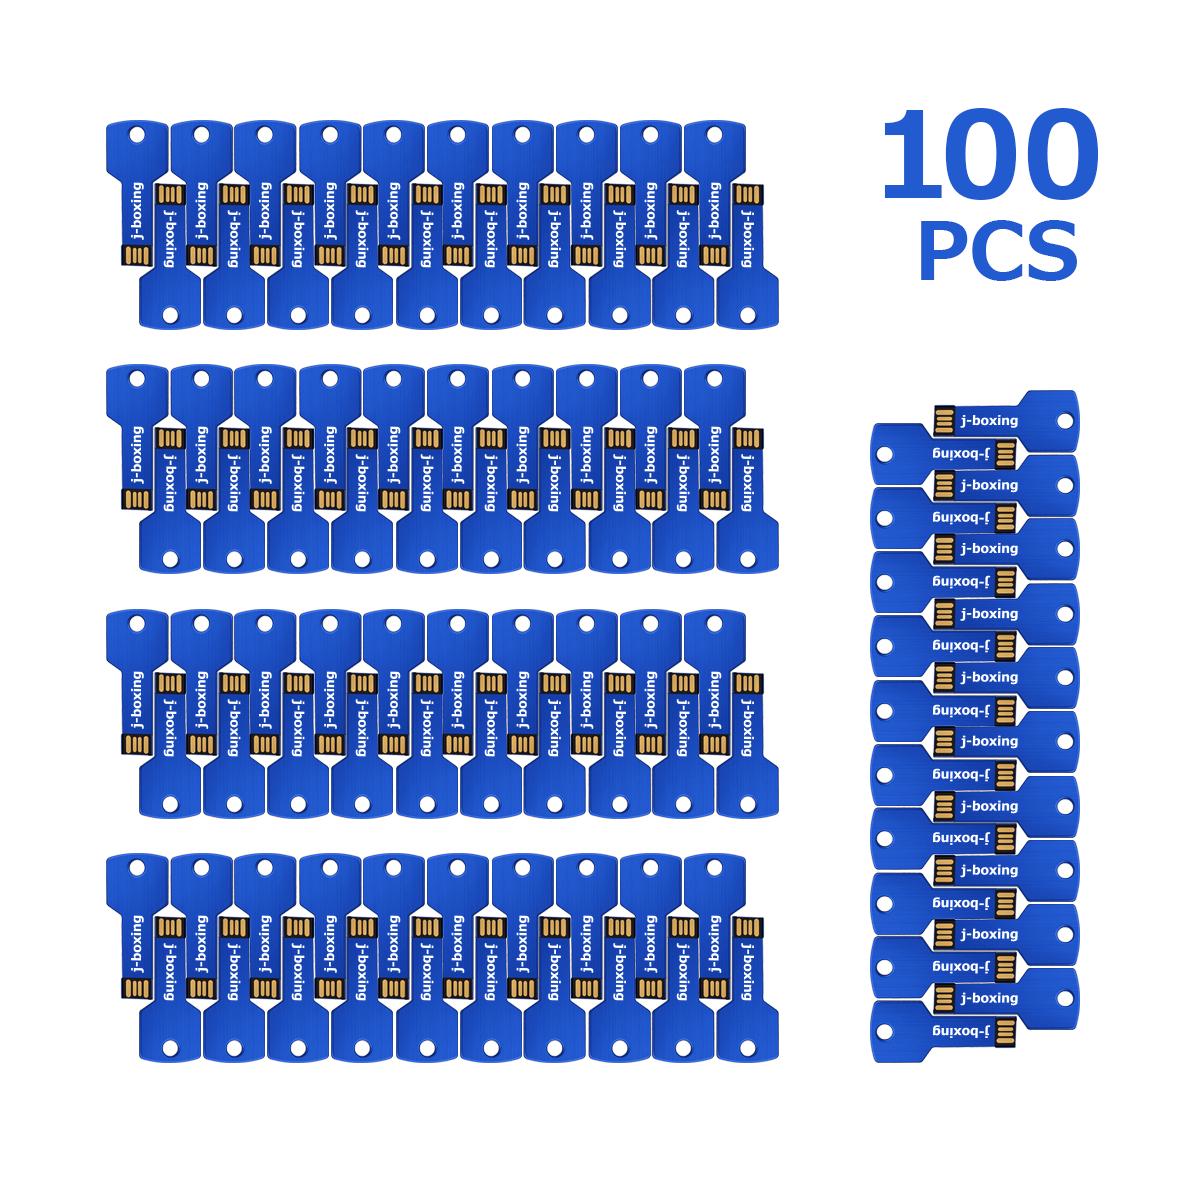 100PCS 1GB USBフラッシュドライブカスタムロゴネームメタルキーUSB 2.0ペンドライブ刻まれたフラッシュメモリスティック用マクブック用のフラッシュメモリスティック